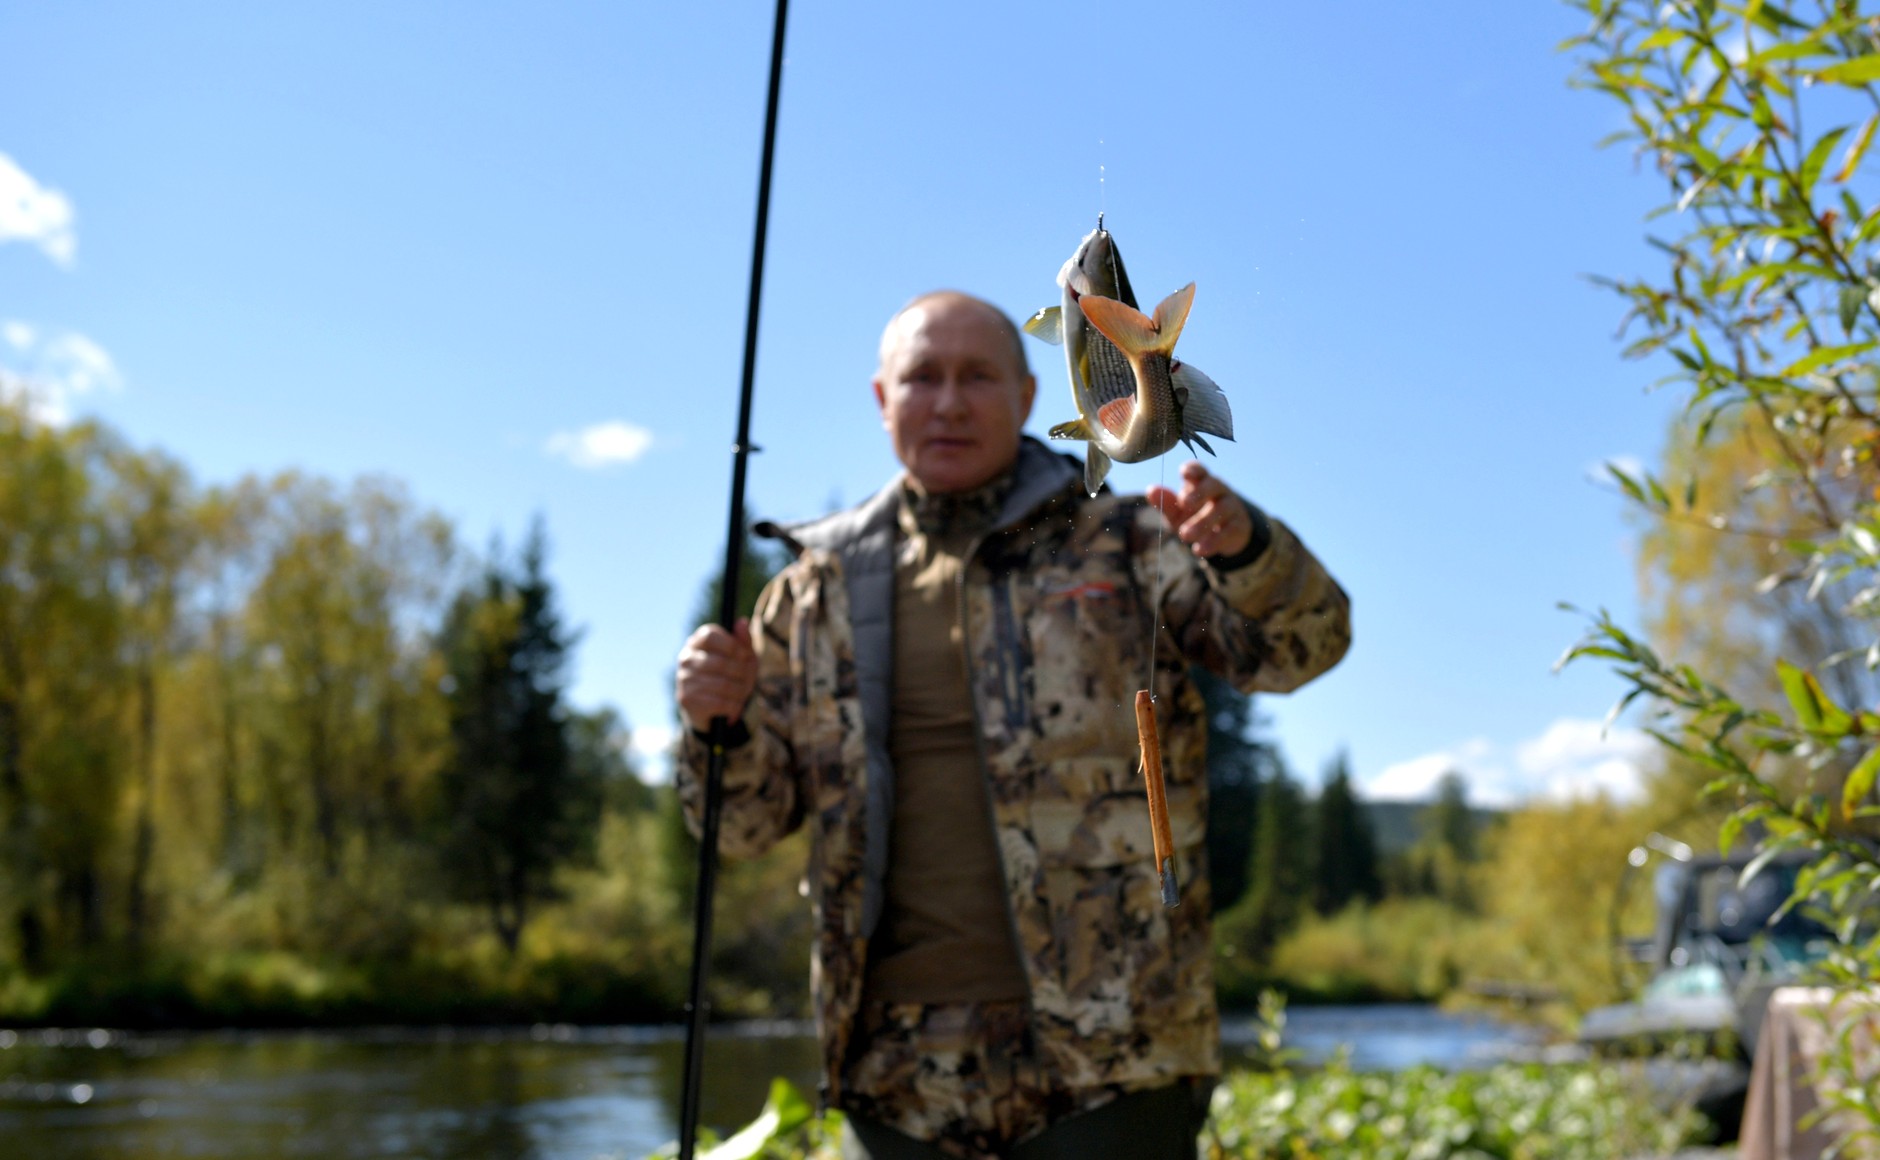 Песков рассказывал, что Путин сам ловил рыбу, из которой потом делали уху